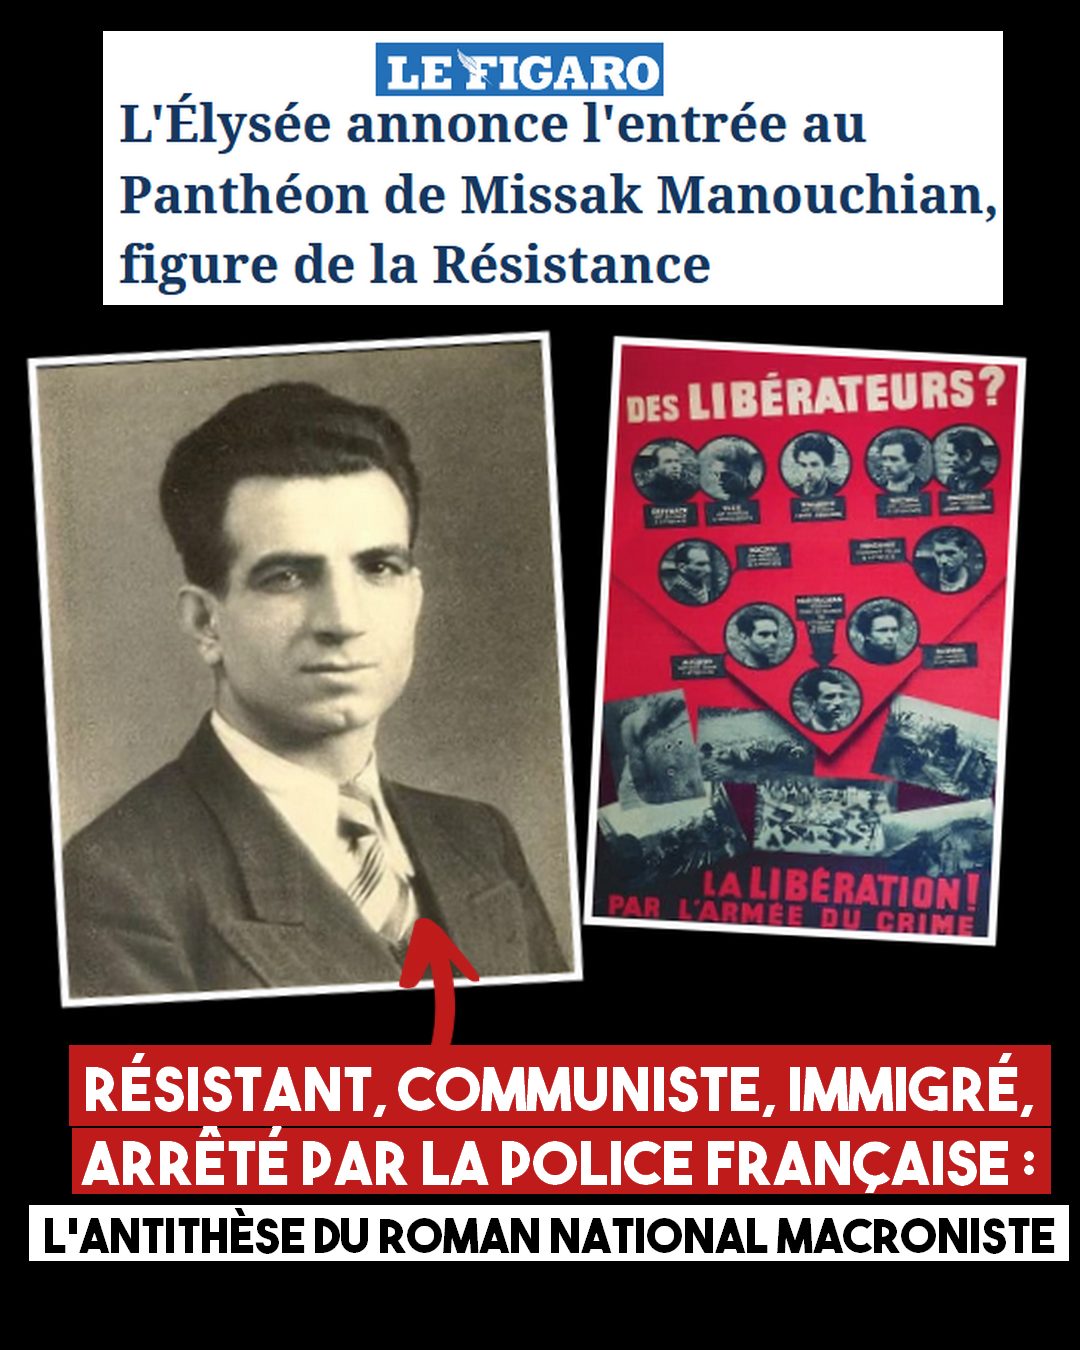 À gauche : portrait de Missak Manouchian À droite : l'affiche rouge, liste de terroristes aux yeux du régime nazi, où Manouchian figure en bonne place.À gauche : portrait de Missak Manouchian À droite : l'affiche rouge, liste de terroristes aux yeux du régime nazi, où Manouchian figure en bonne place.